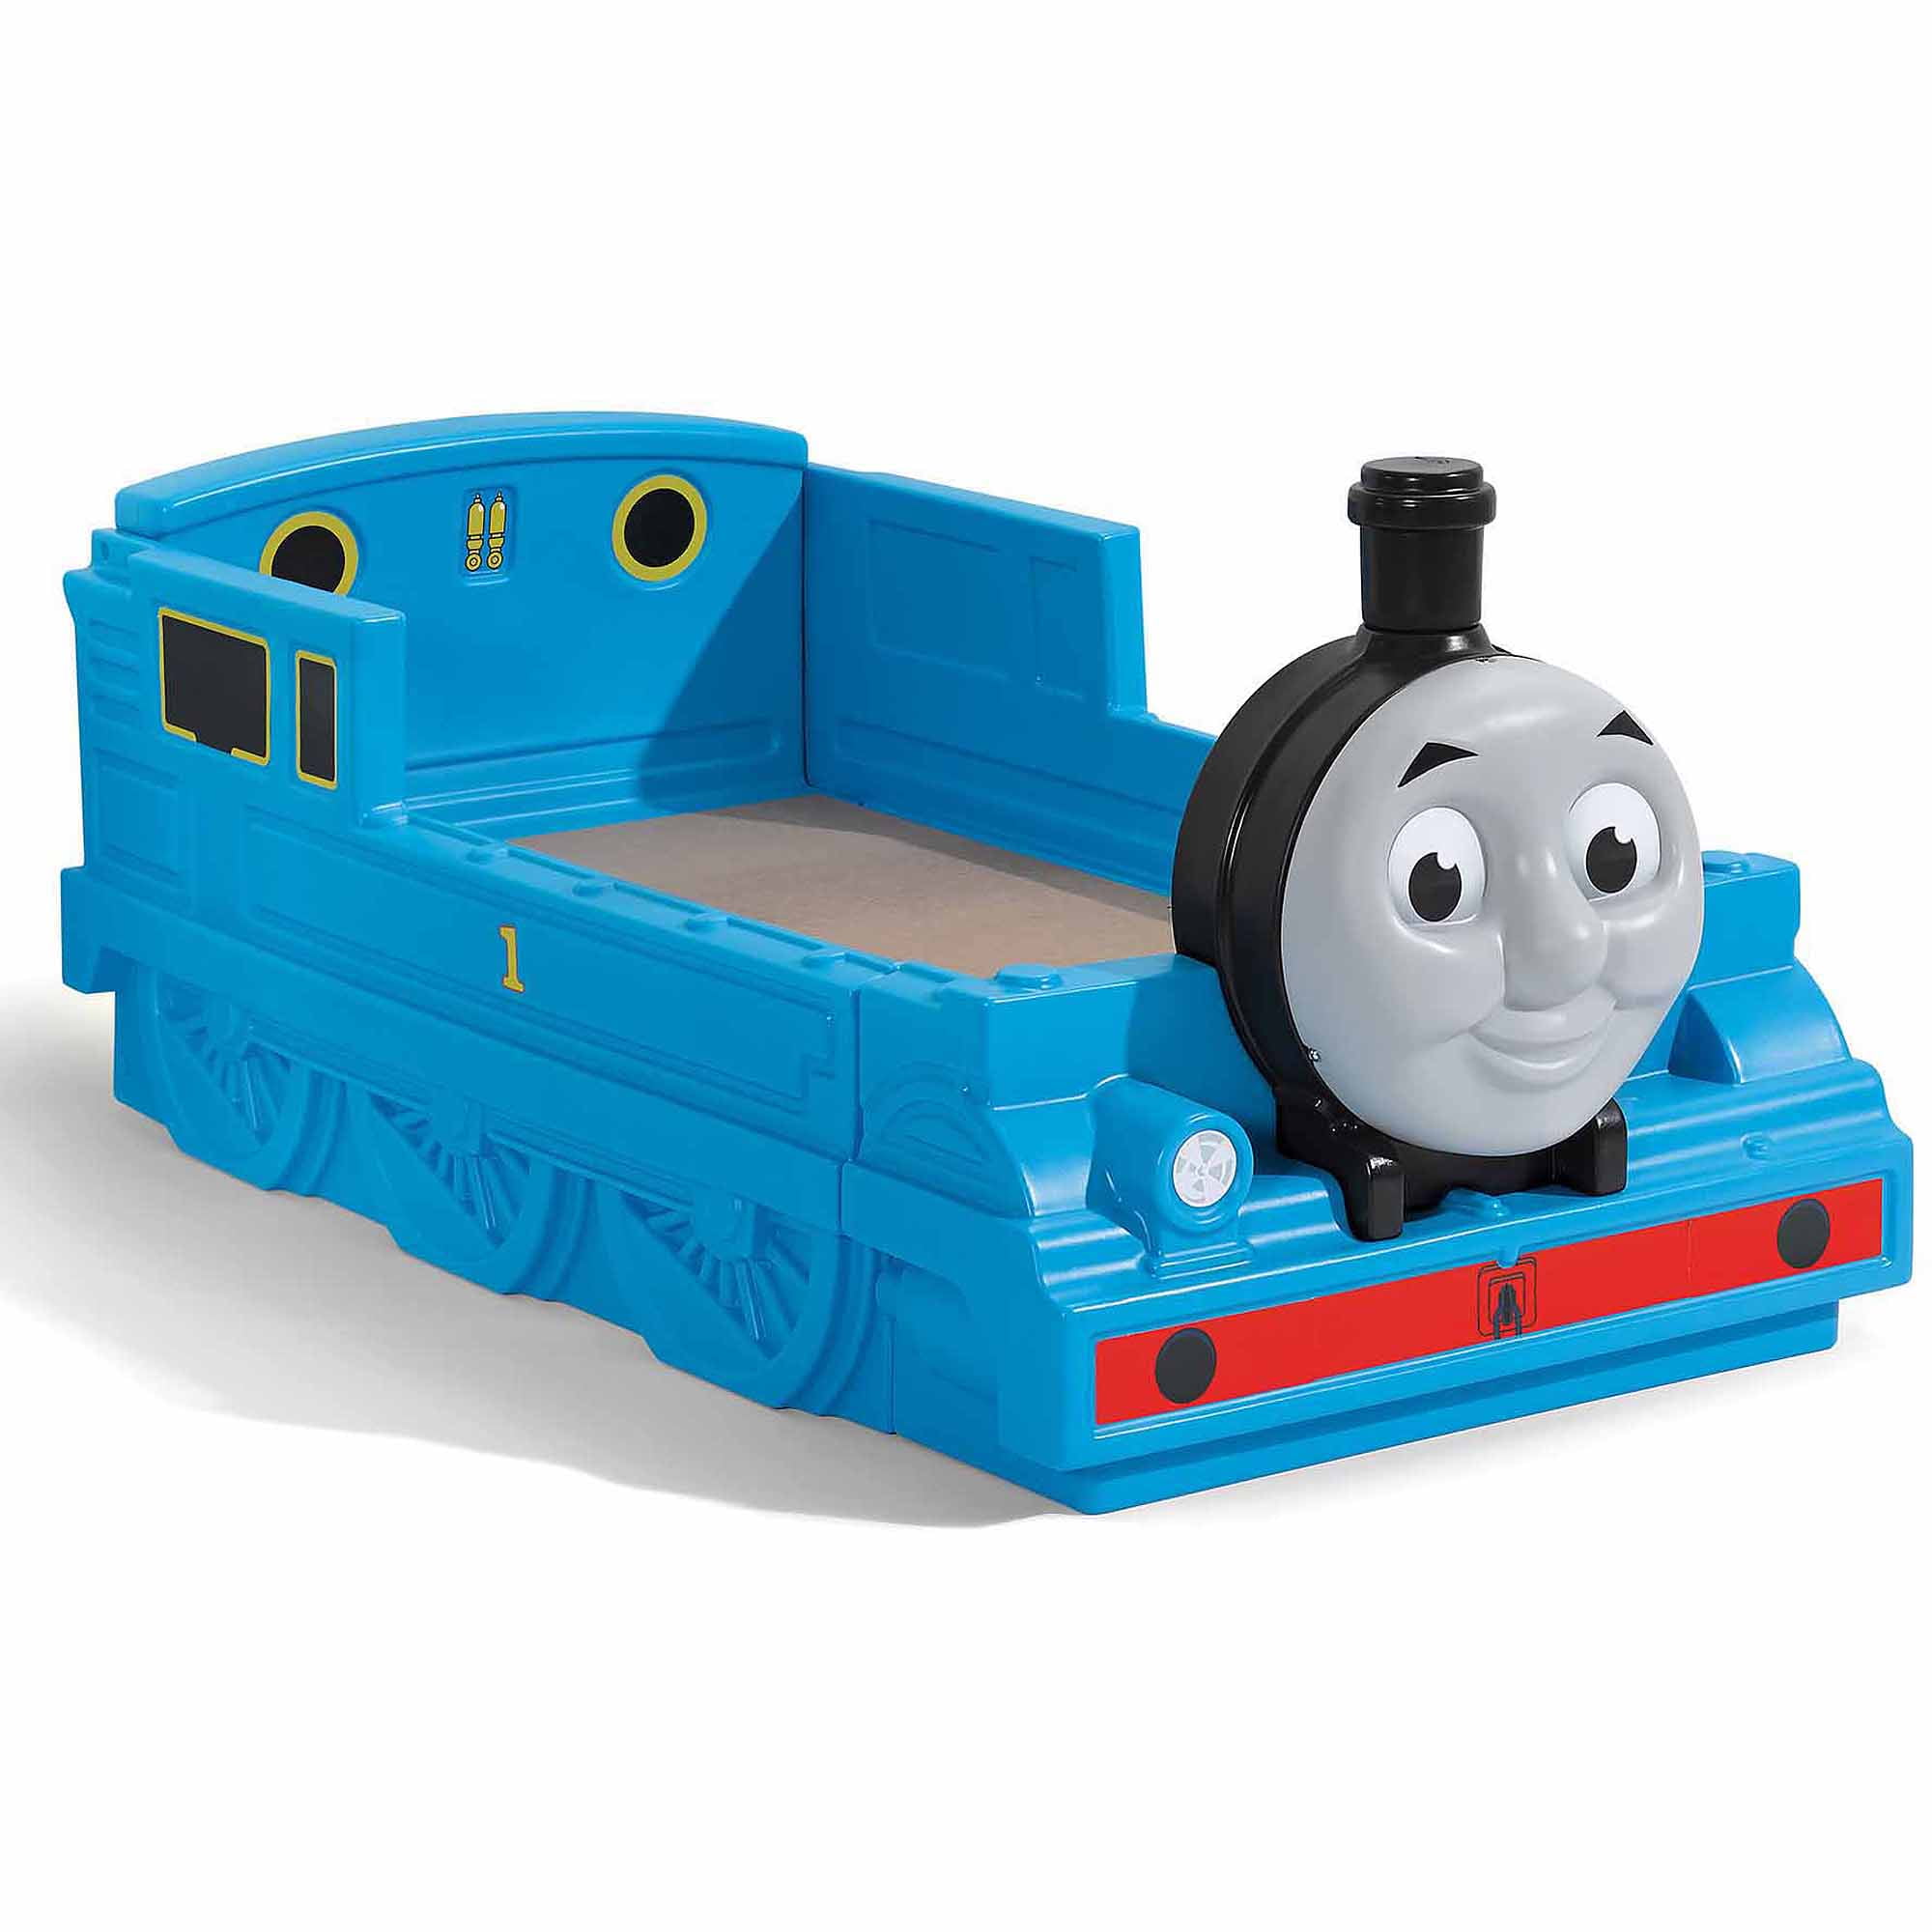 31036円 年間定番 Step2 Thomas The Tank Engine 2-in-1 Toy Box and Art Lid きかんしゃトーマス おもちゃ箱